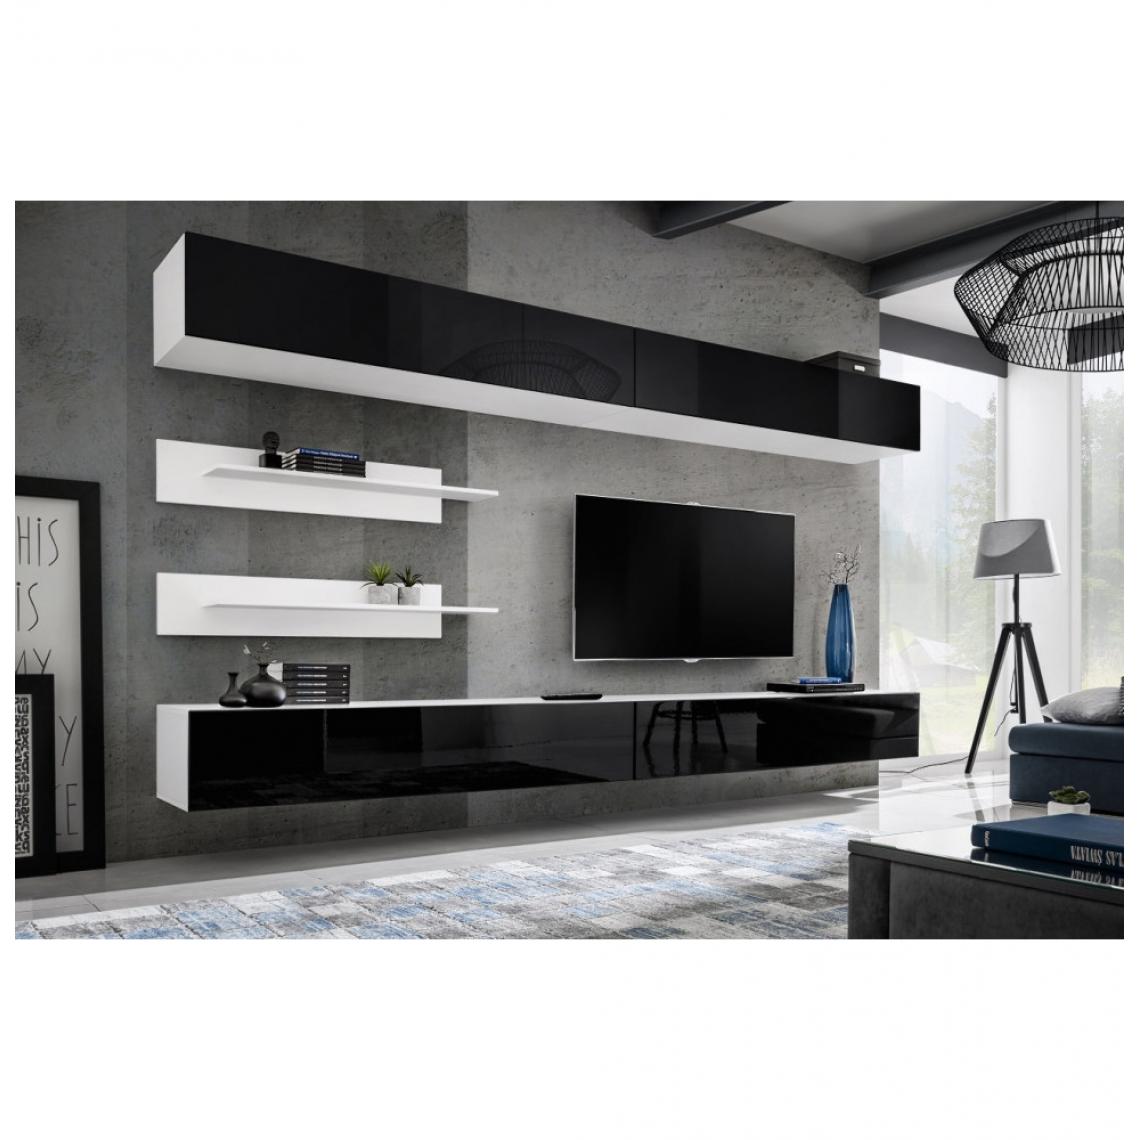 Ac-Deco - Ensemble mural - FLY I - 2 rangements - 2 meubles TV - 2 étagères - Blanc et noir - Meubles TV, Hi-Fi